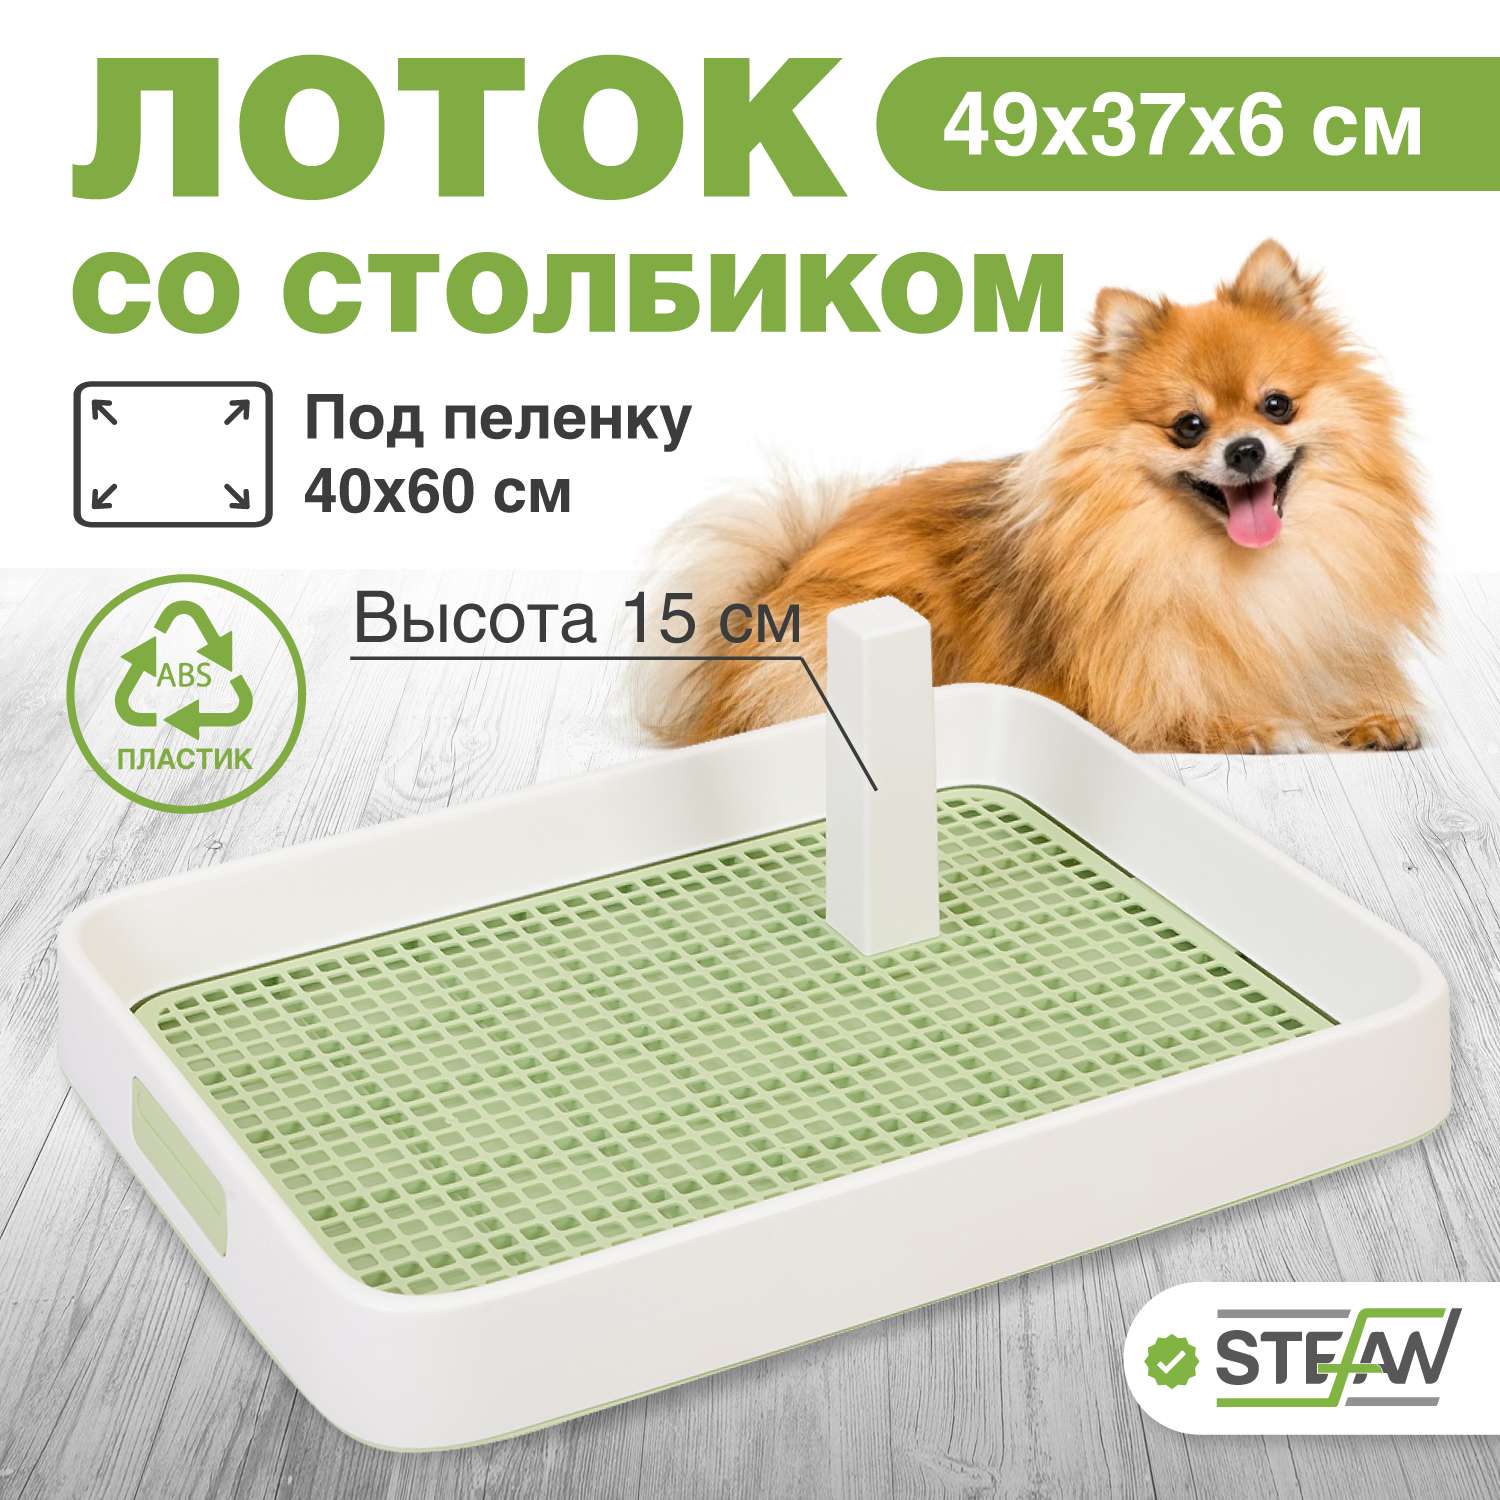 Туалет лоток для собак Stefan со столбиком S 49x37x6 зеленый - фото 1